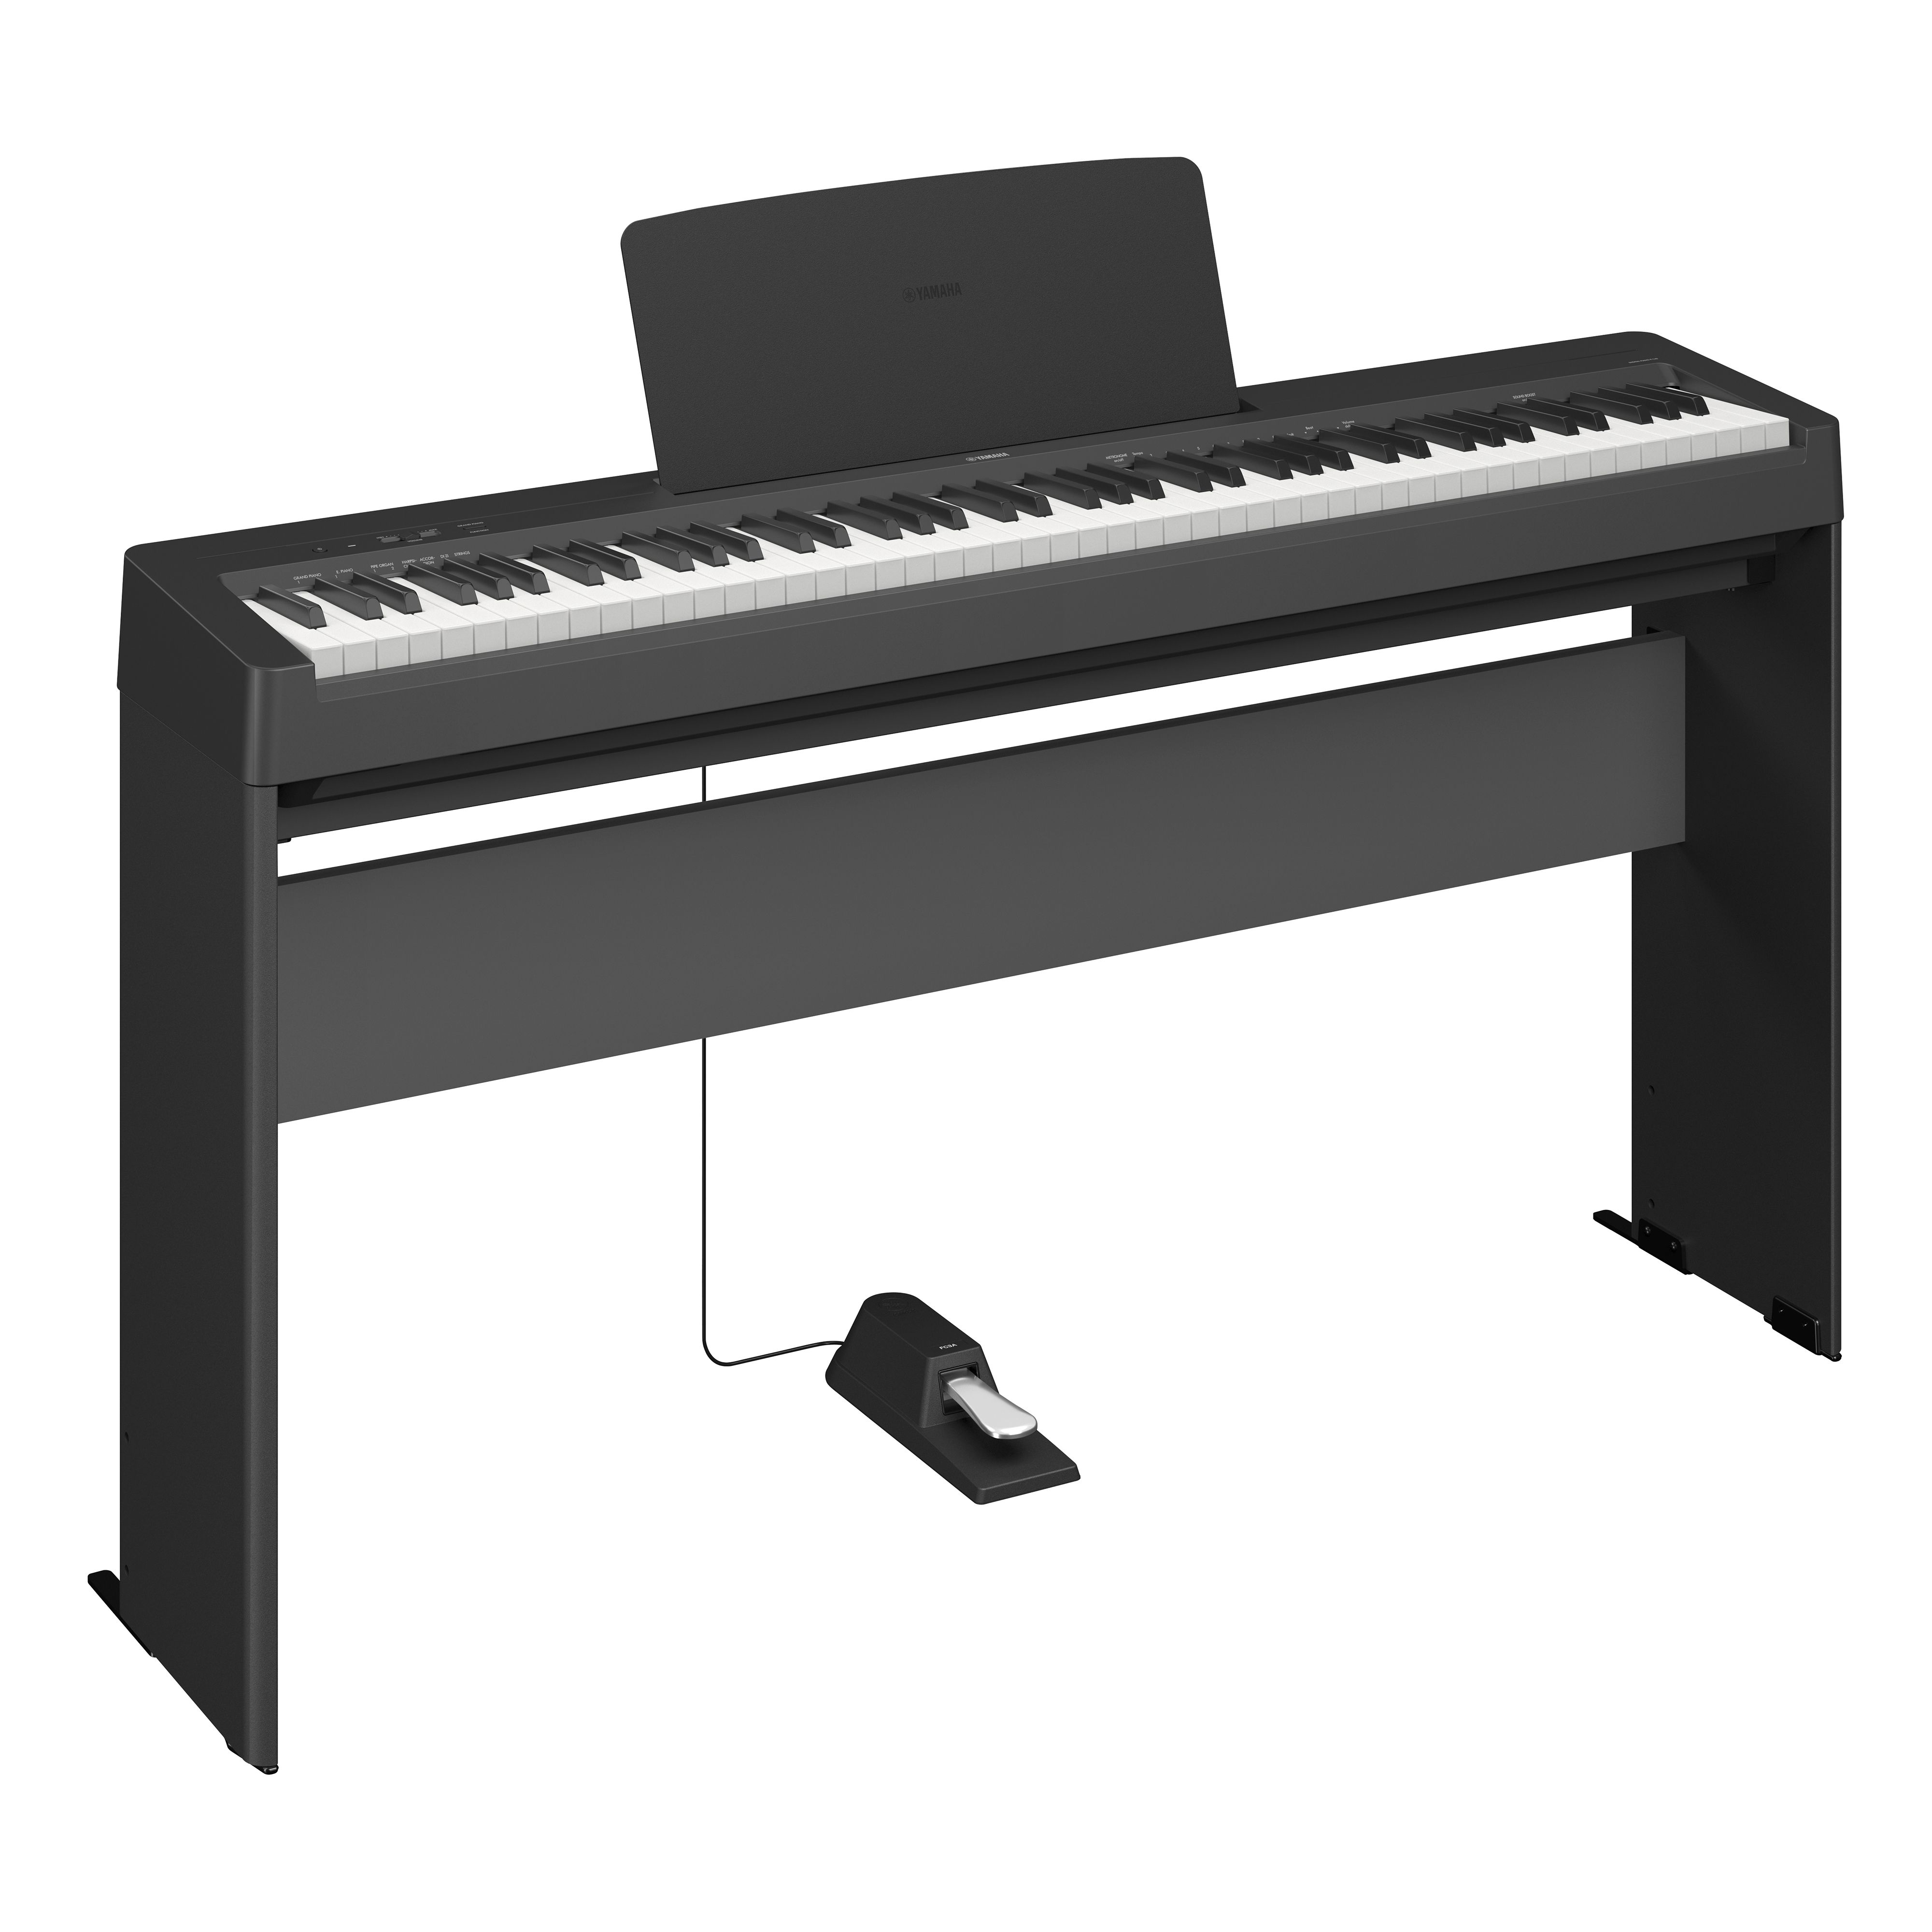 Yamaha P145 P-Series Digital Piano in Black